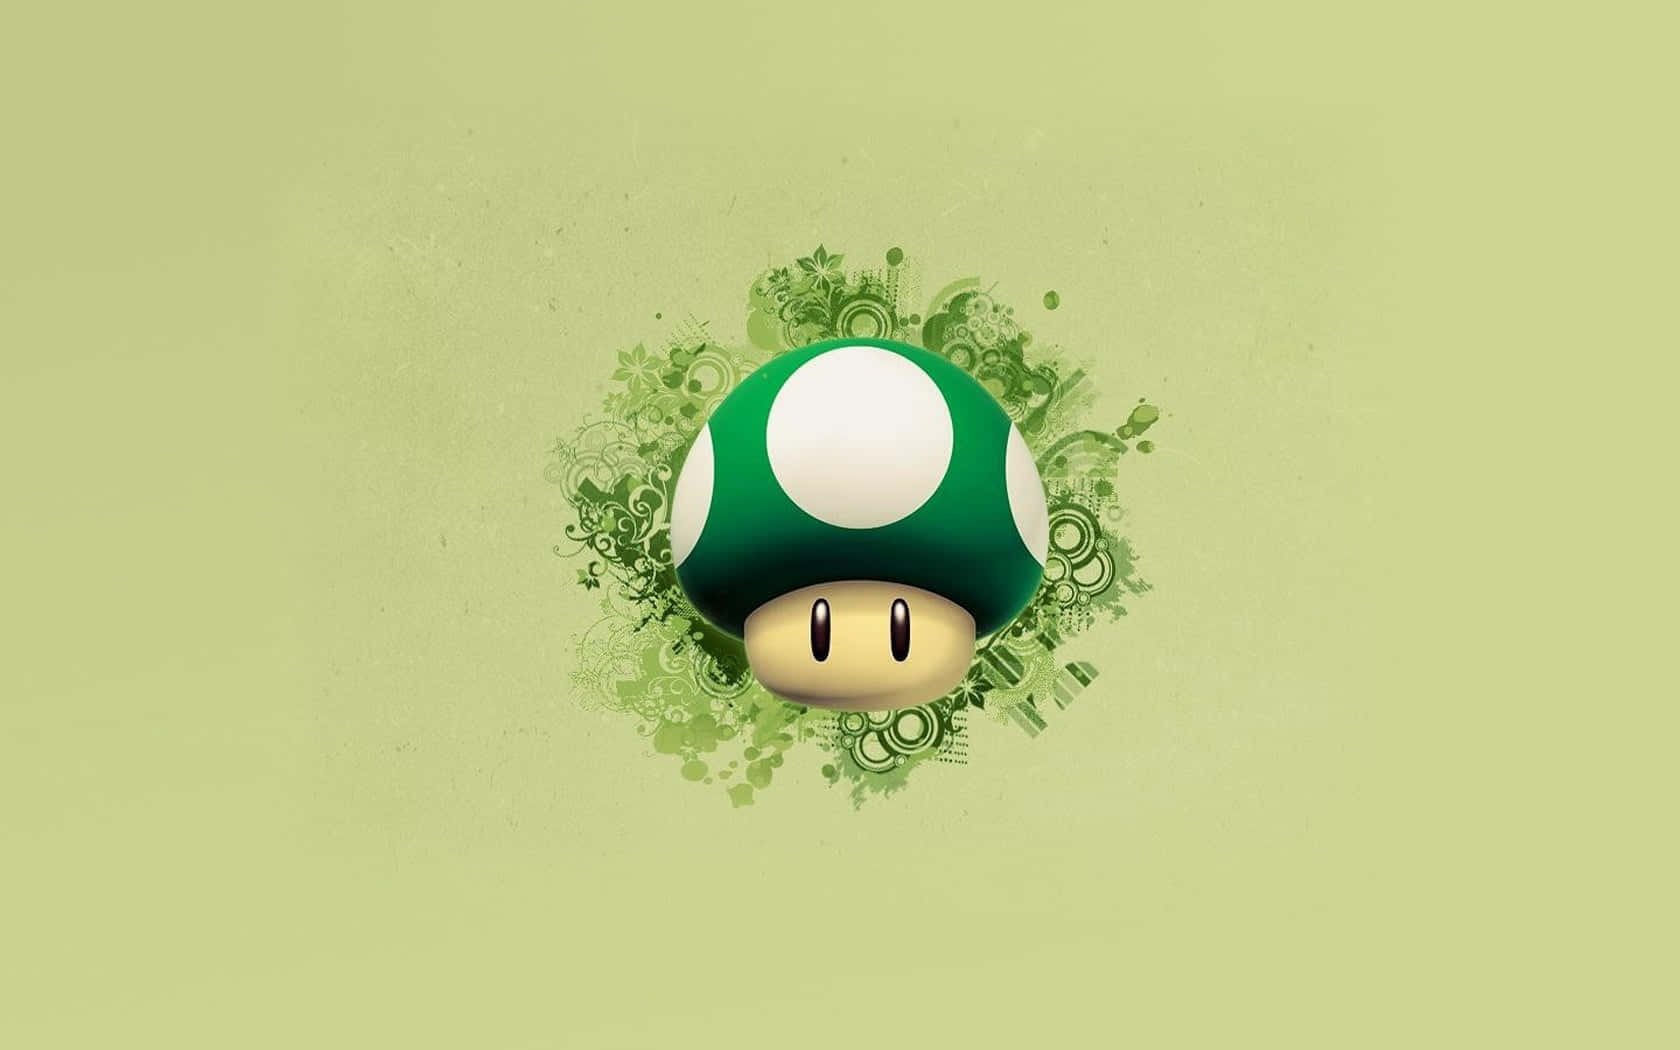 Super Mario Mushroom Power-up Wallpaper Wallpaper